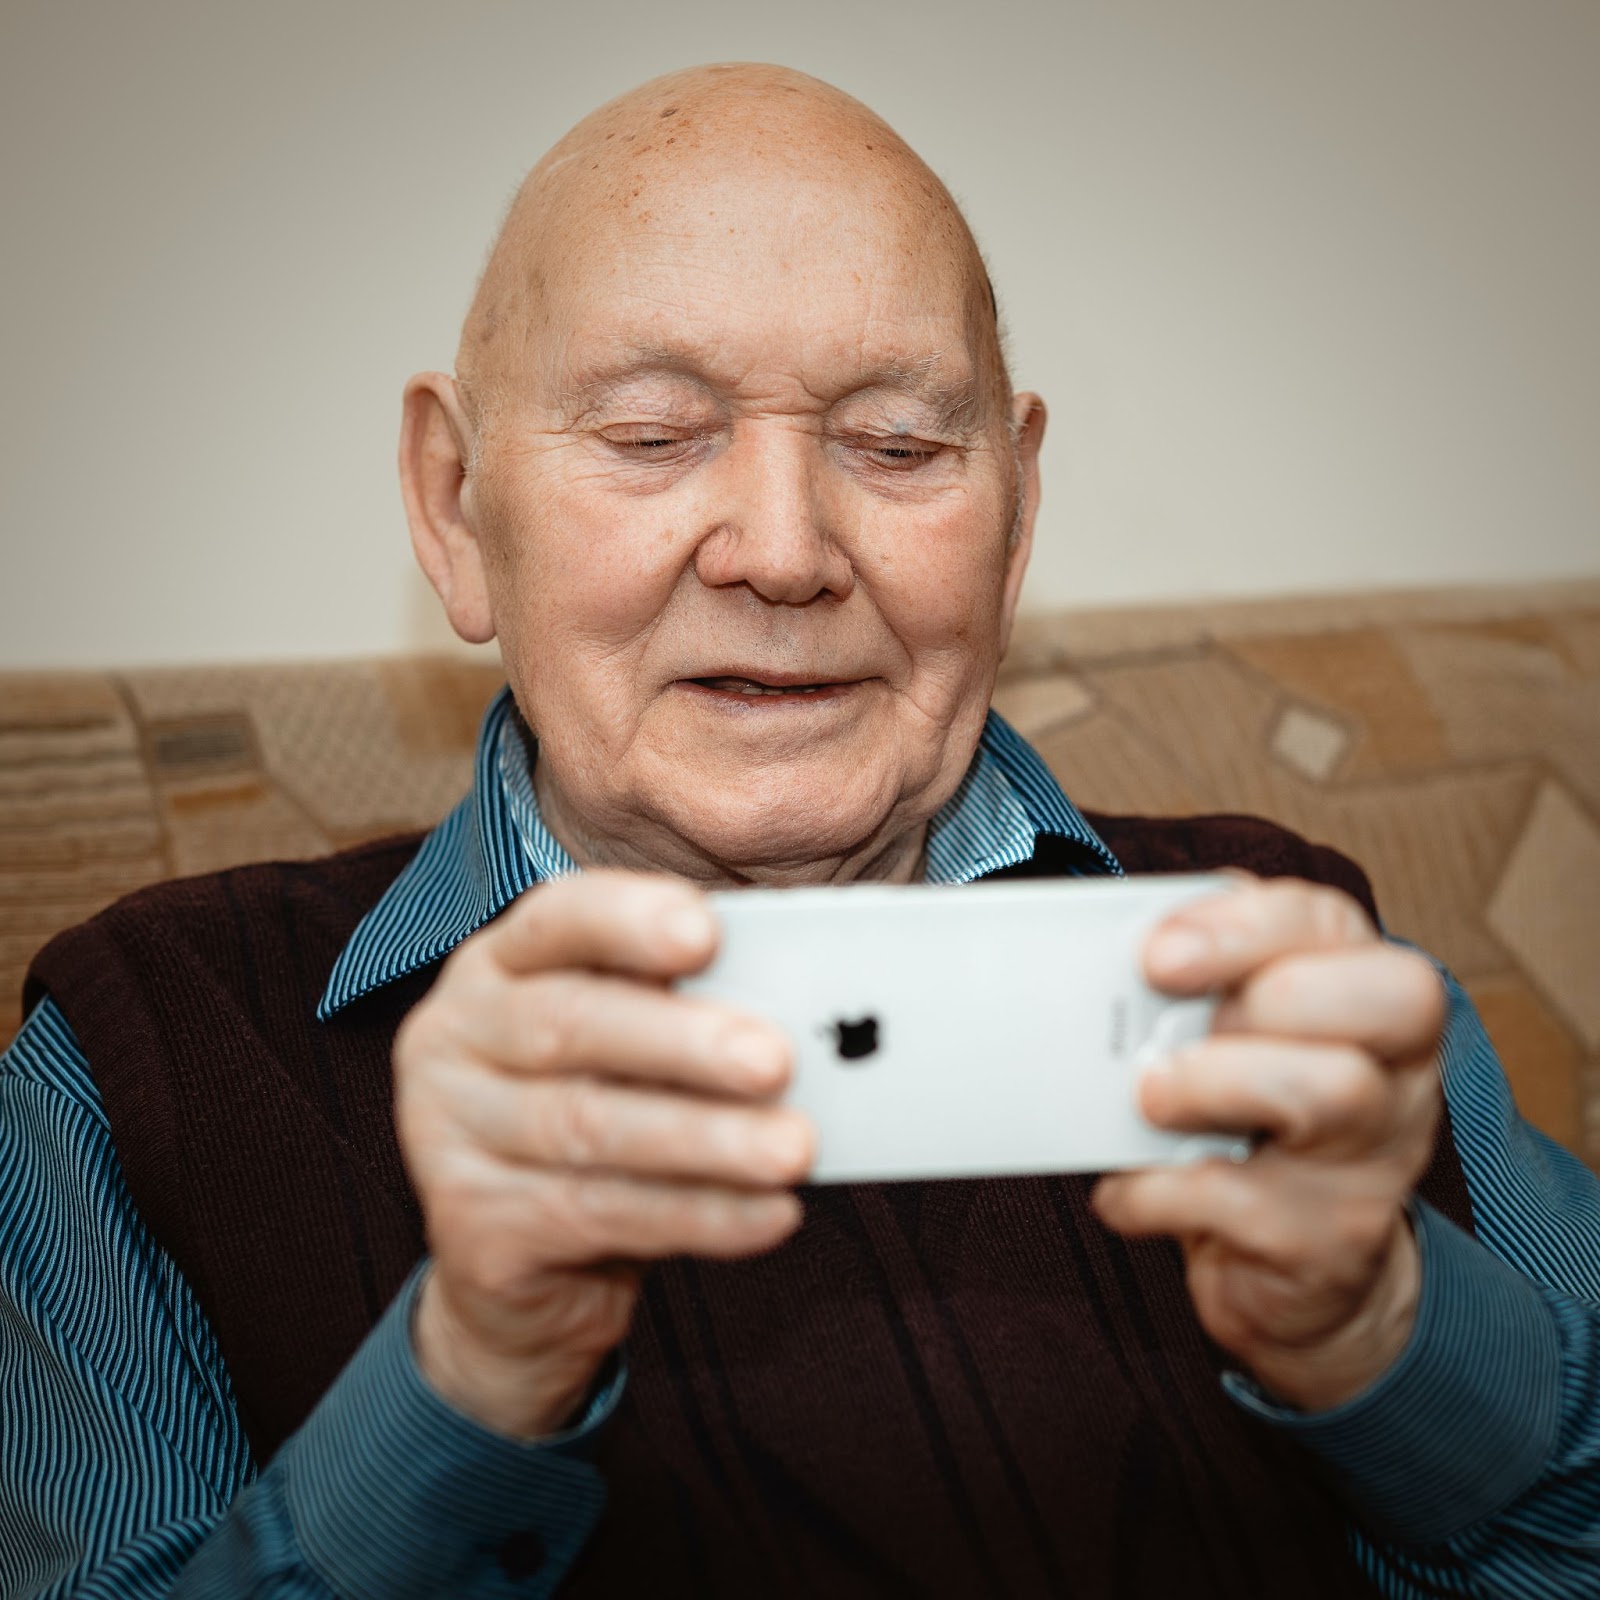 Old man playing video game